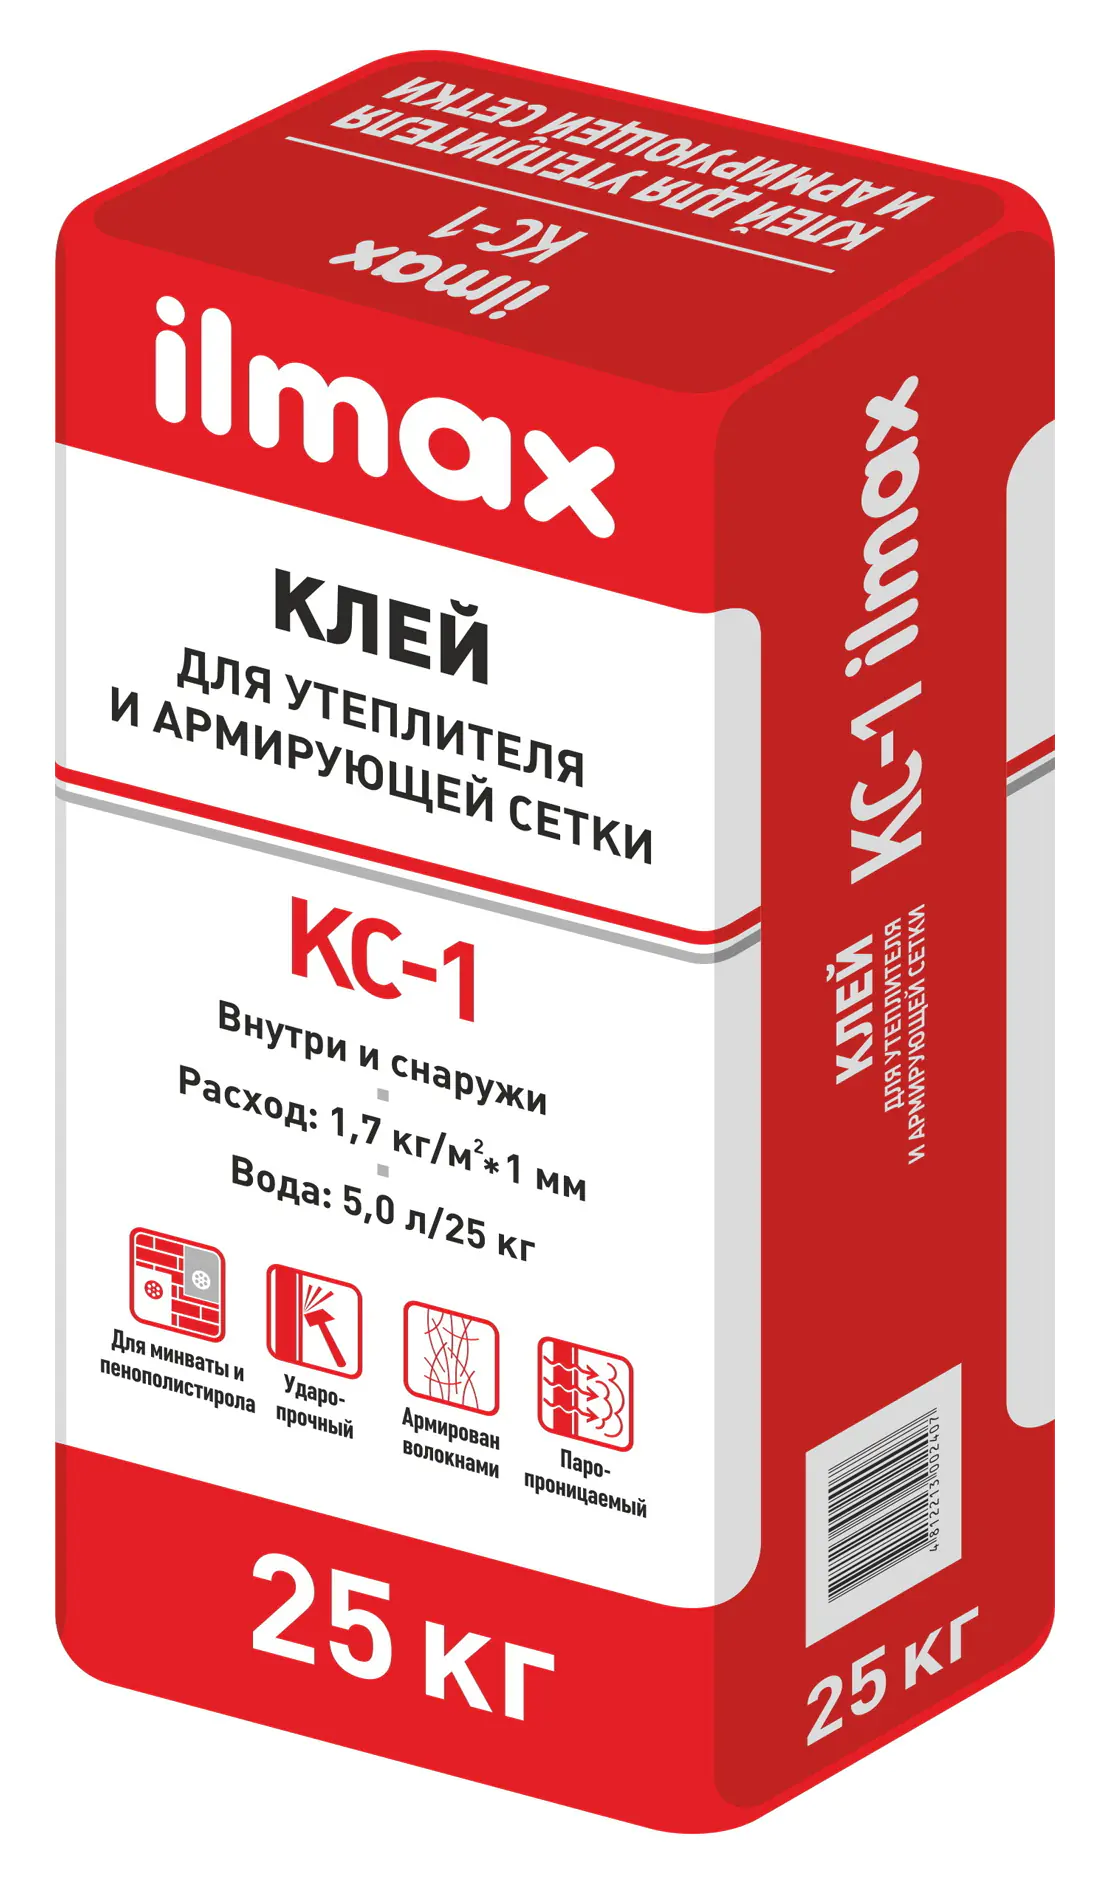 Клей ilmax КС-1 для утеплителя и армирующей сетки. РБ. 25 кг.